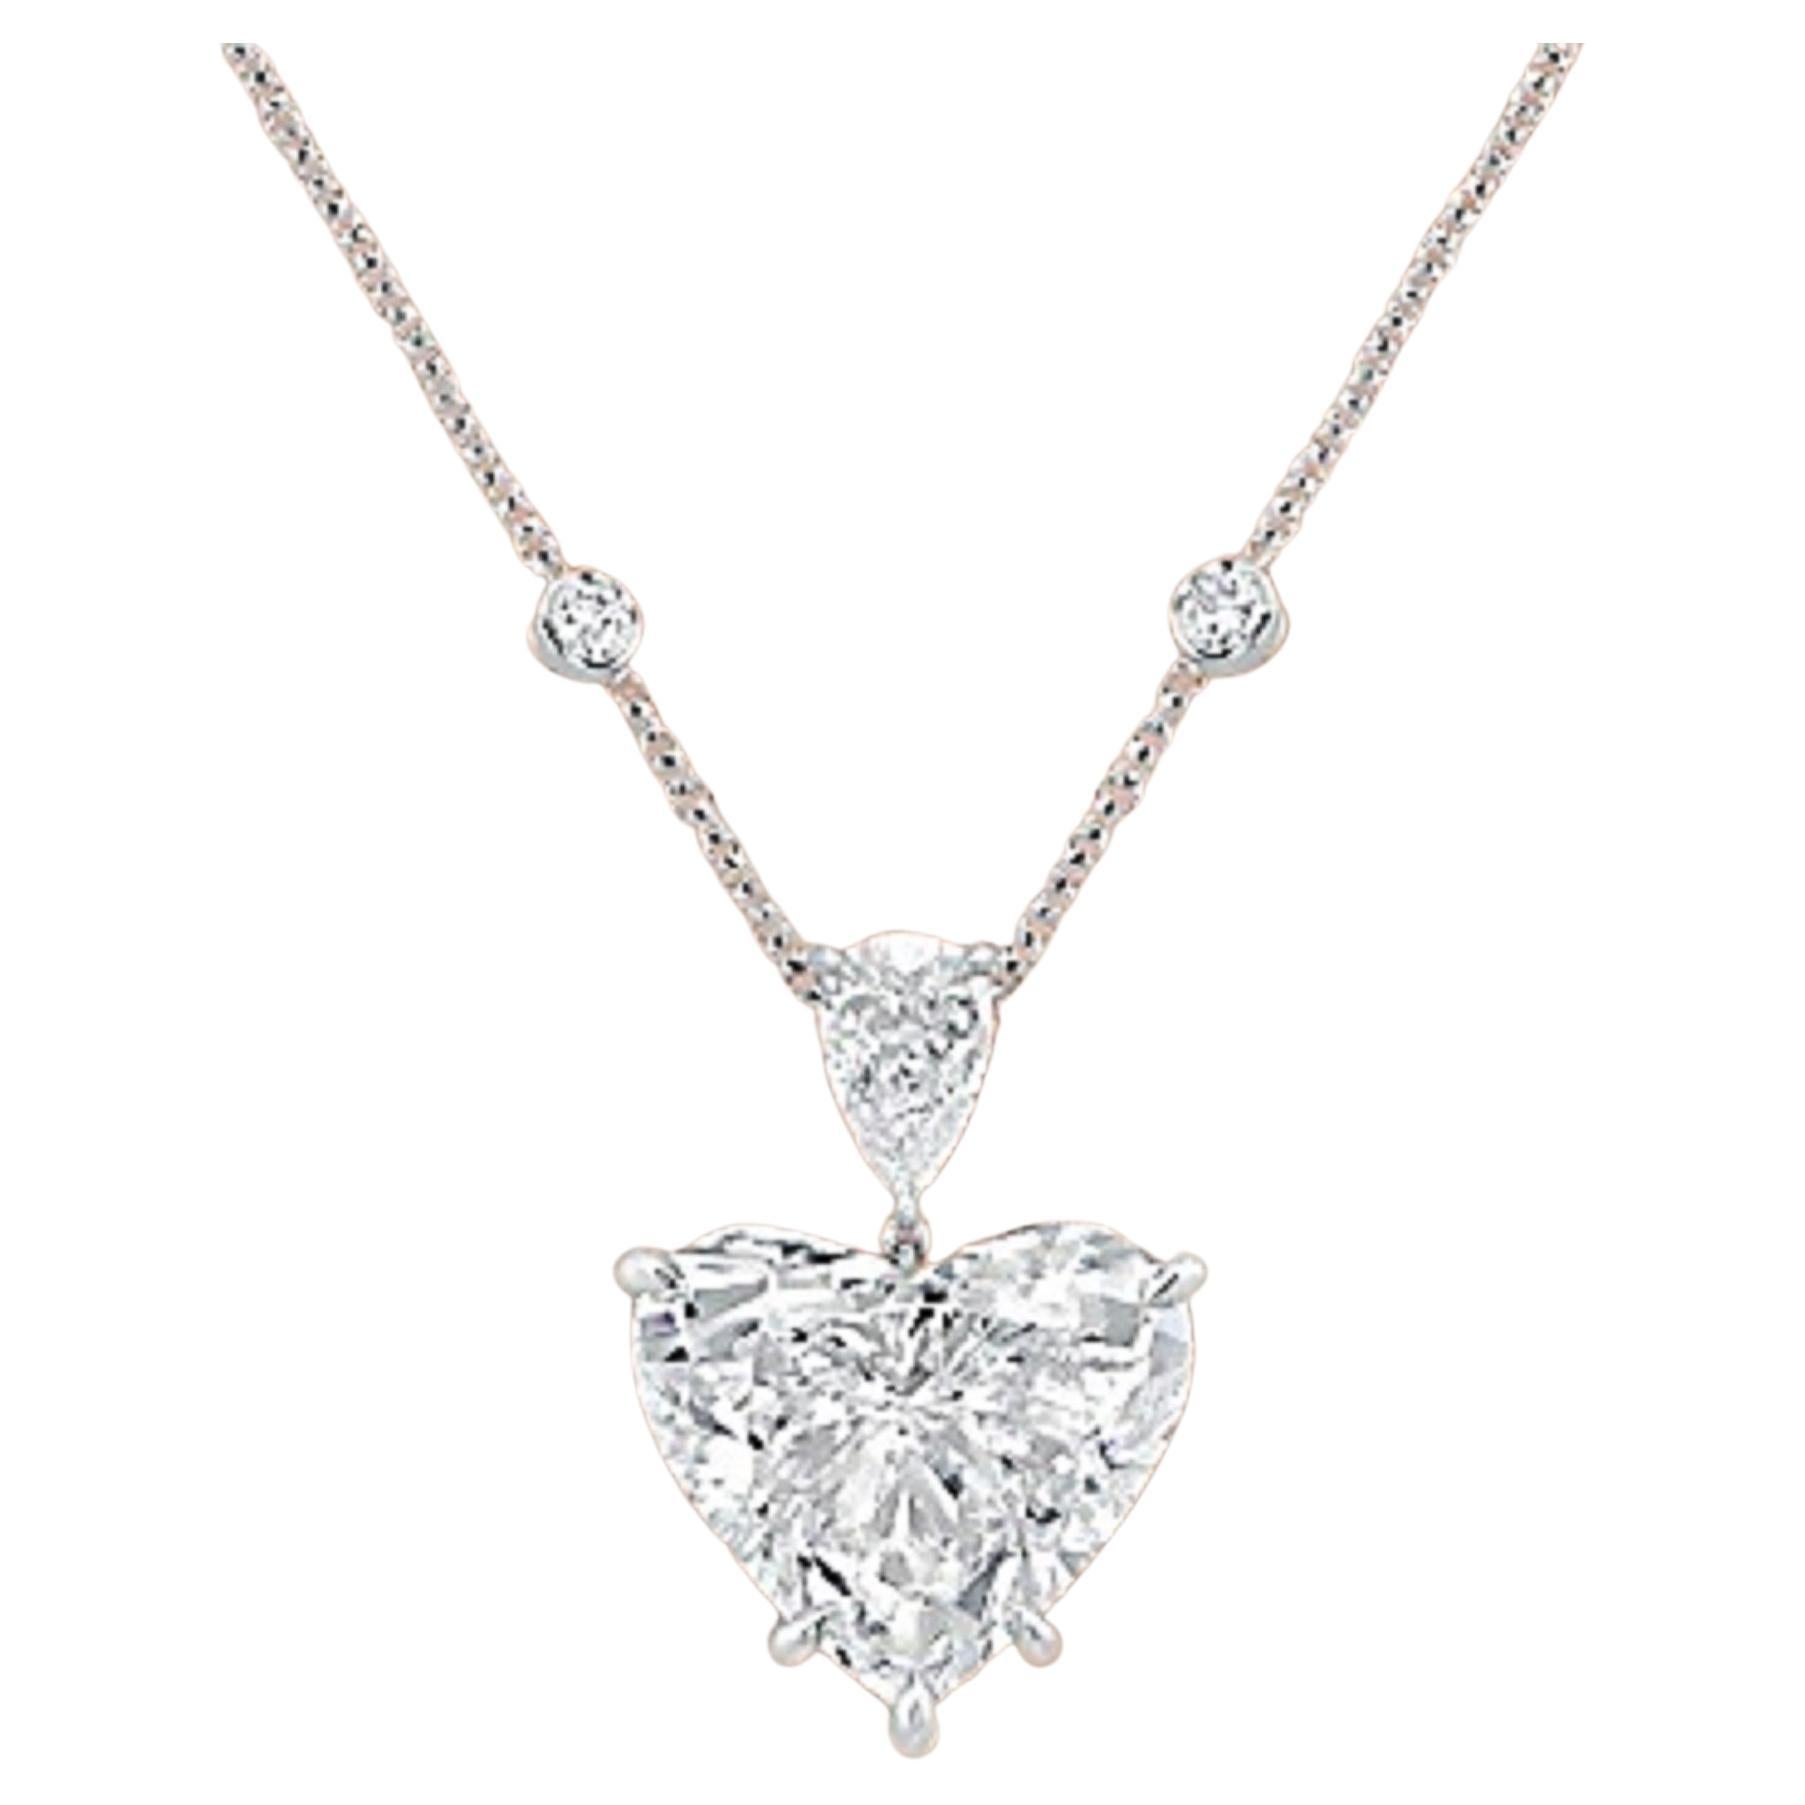 Voici l'Epitome de l'Elegance : Le collier en platine avec pendentif diamant en forme de cœur de 10 carats certifié par la GIA ! 

Êtes-vous prêt à éblouir et à captiver avec une élégance inégalée ? Ne cherchez pas plus loin que notre chef-d'œuvre